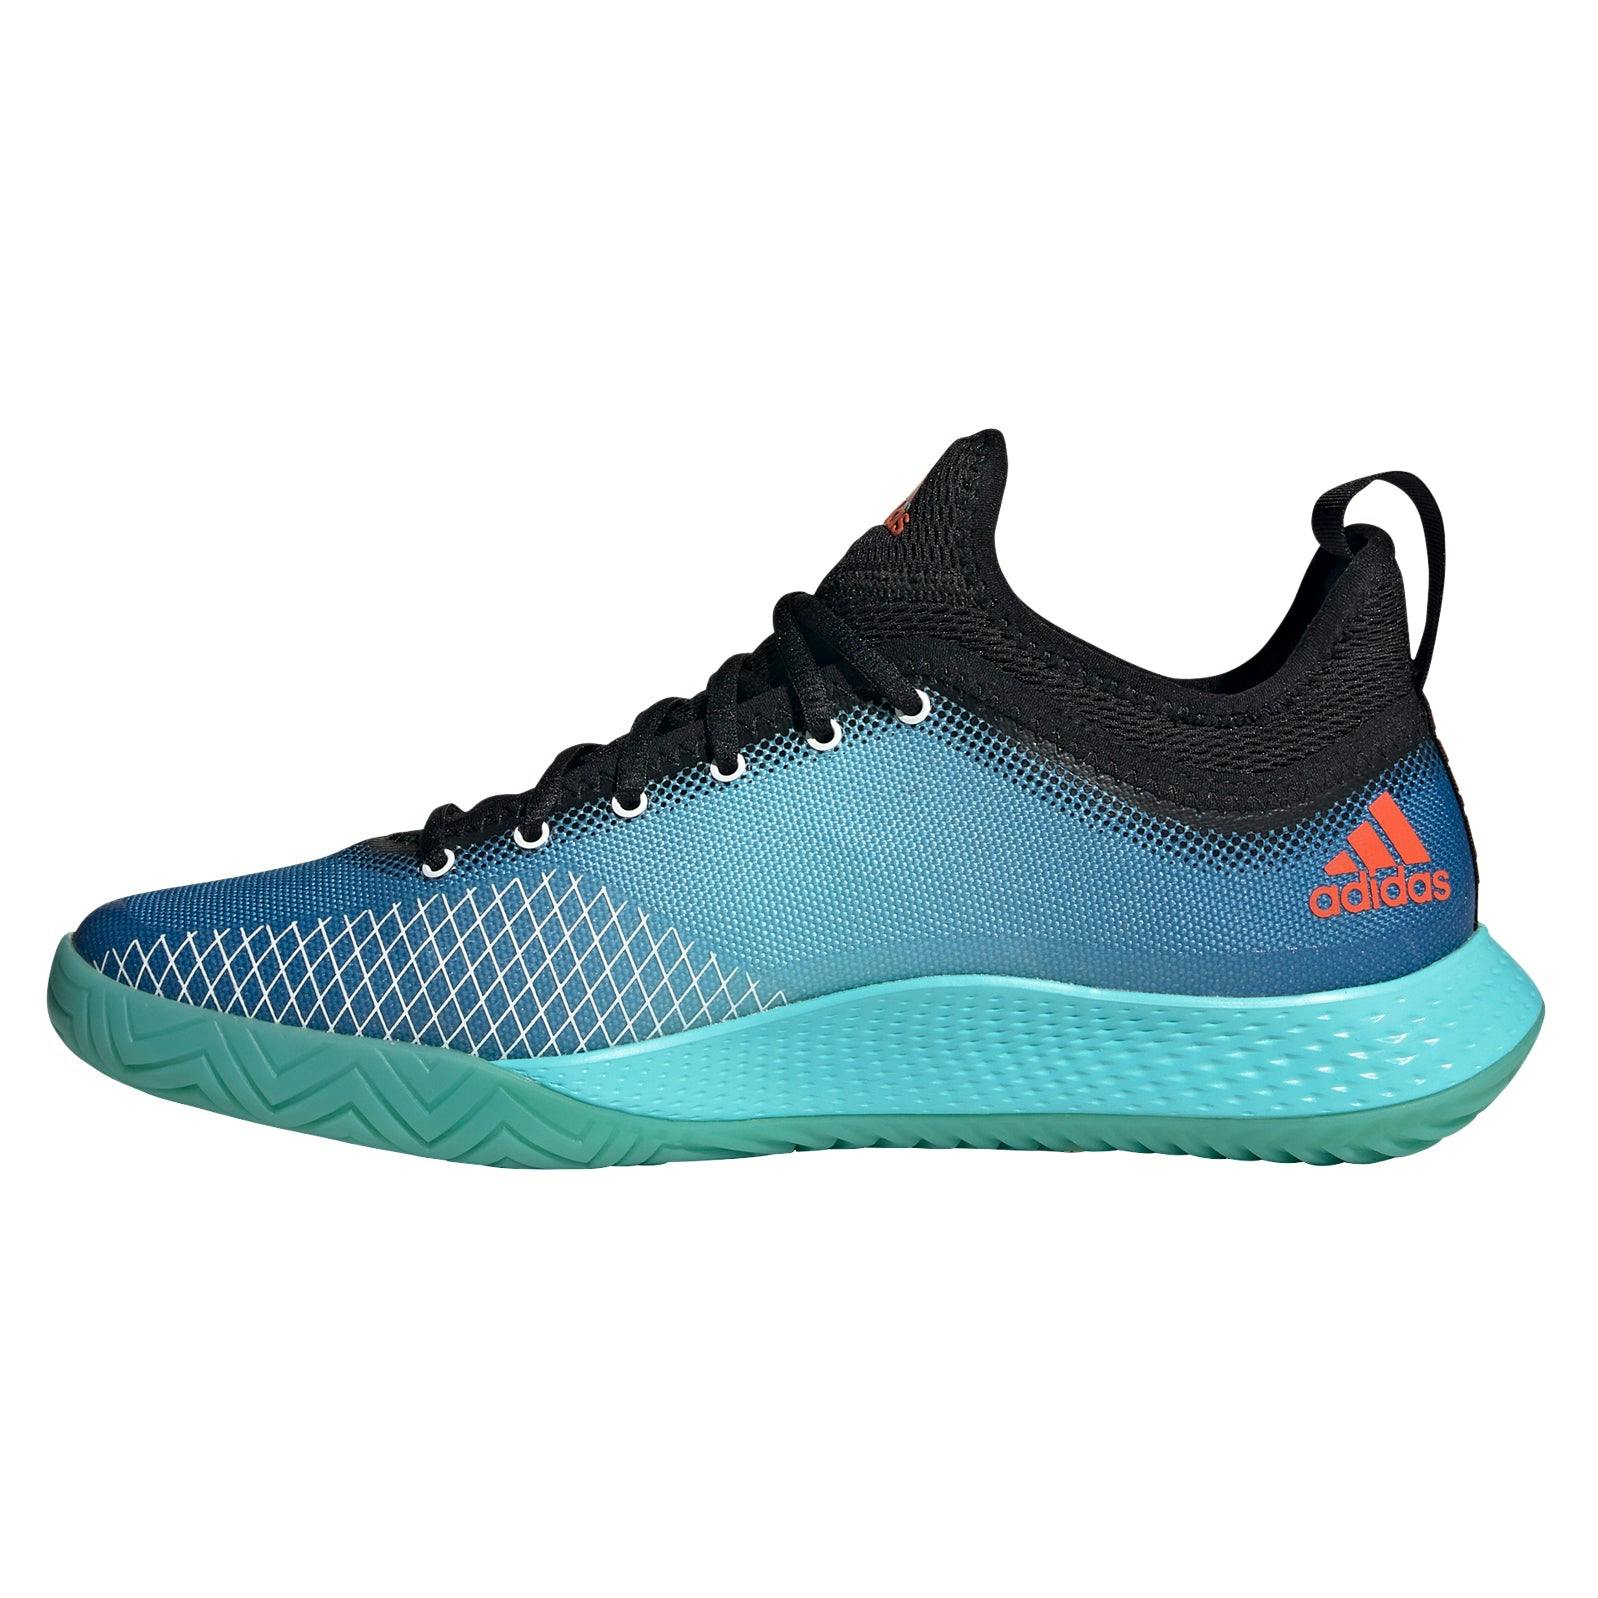 Adidas Defiant Generation Aqua Mens Tennis Shoes - AQUA/BK/BL 448 / D Medium / 8.5